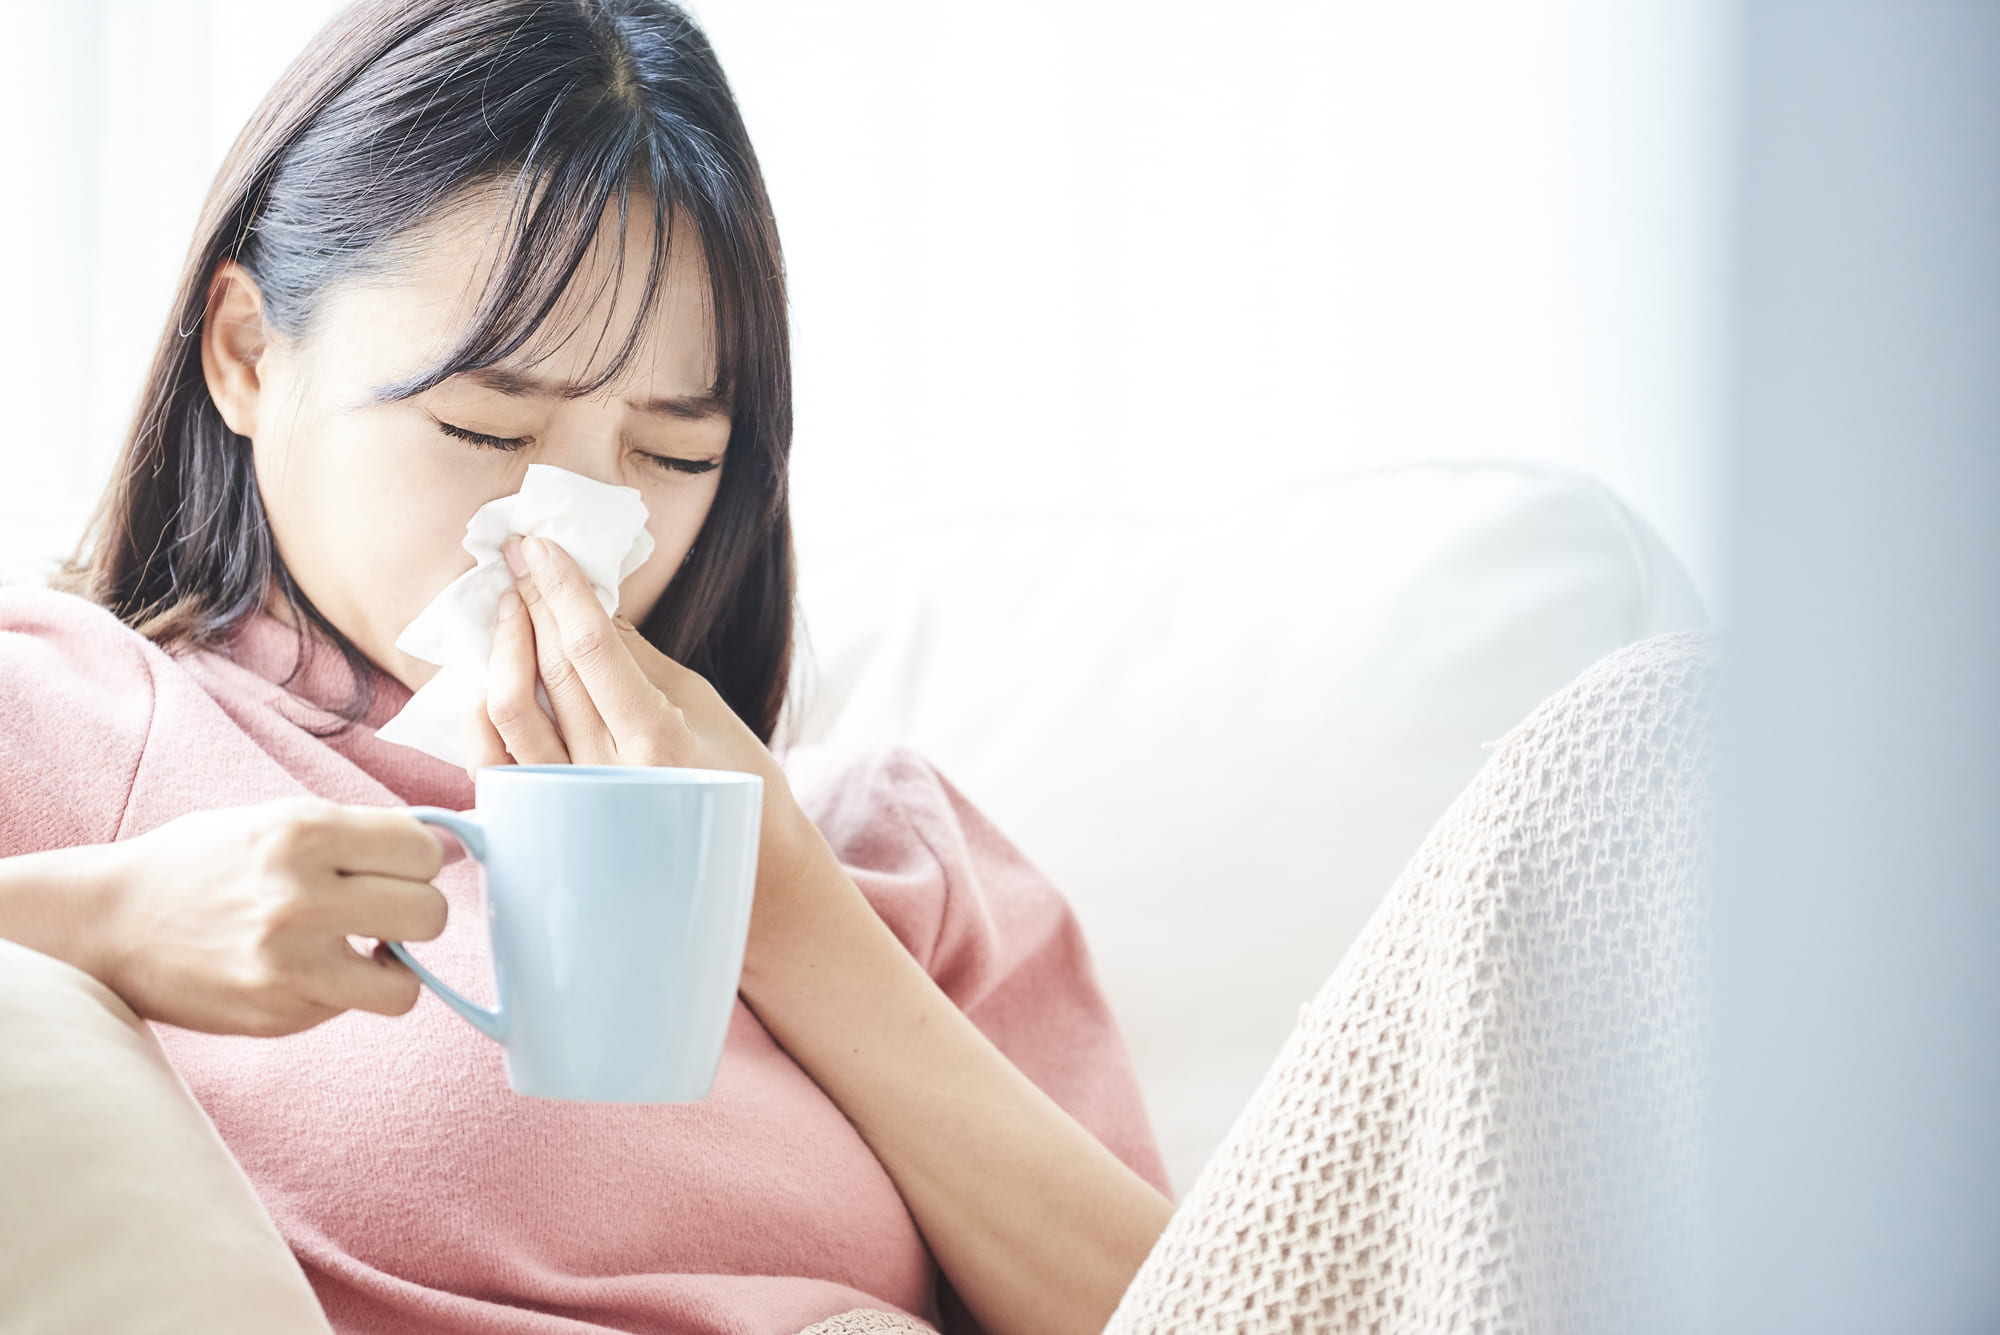 する 鼻 が ツーン の 奥 と 鼻の奥が痛いのは喉の上の炎症が原因。頭痛や鼻水等の風邪とは異なる症状に注意！